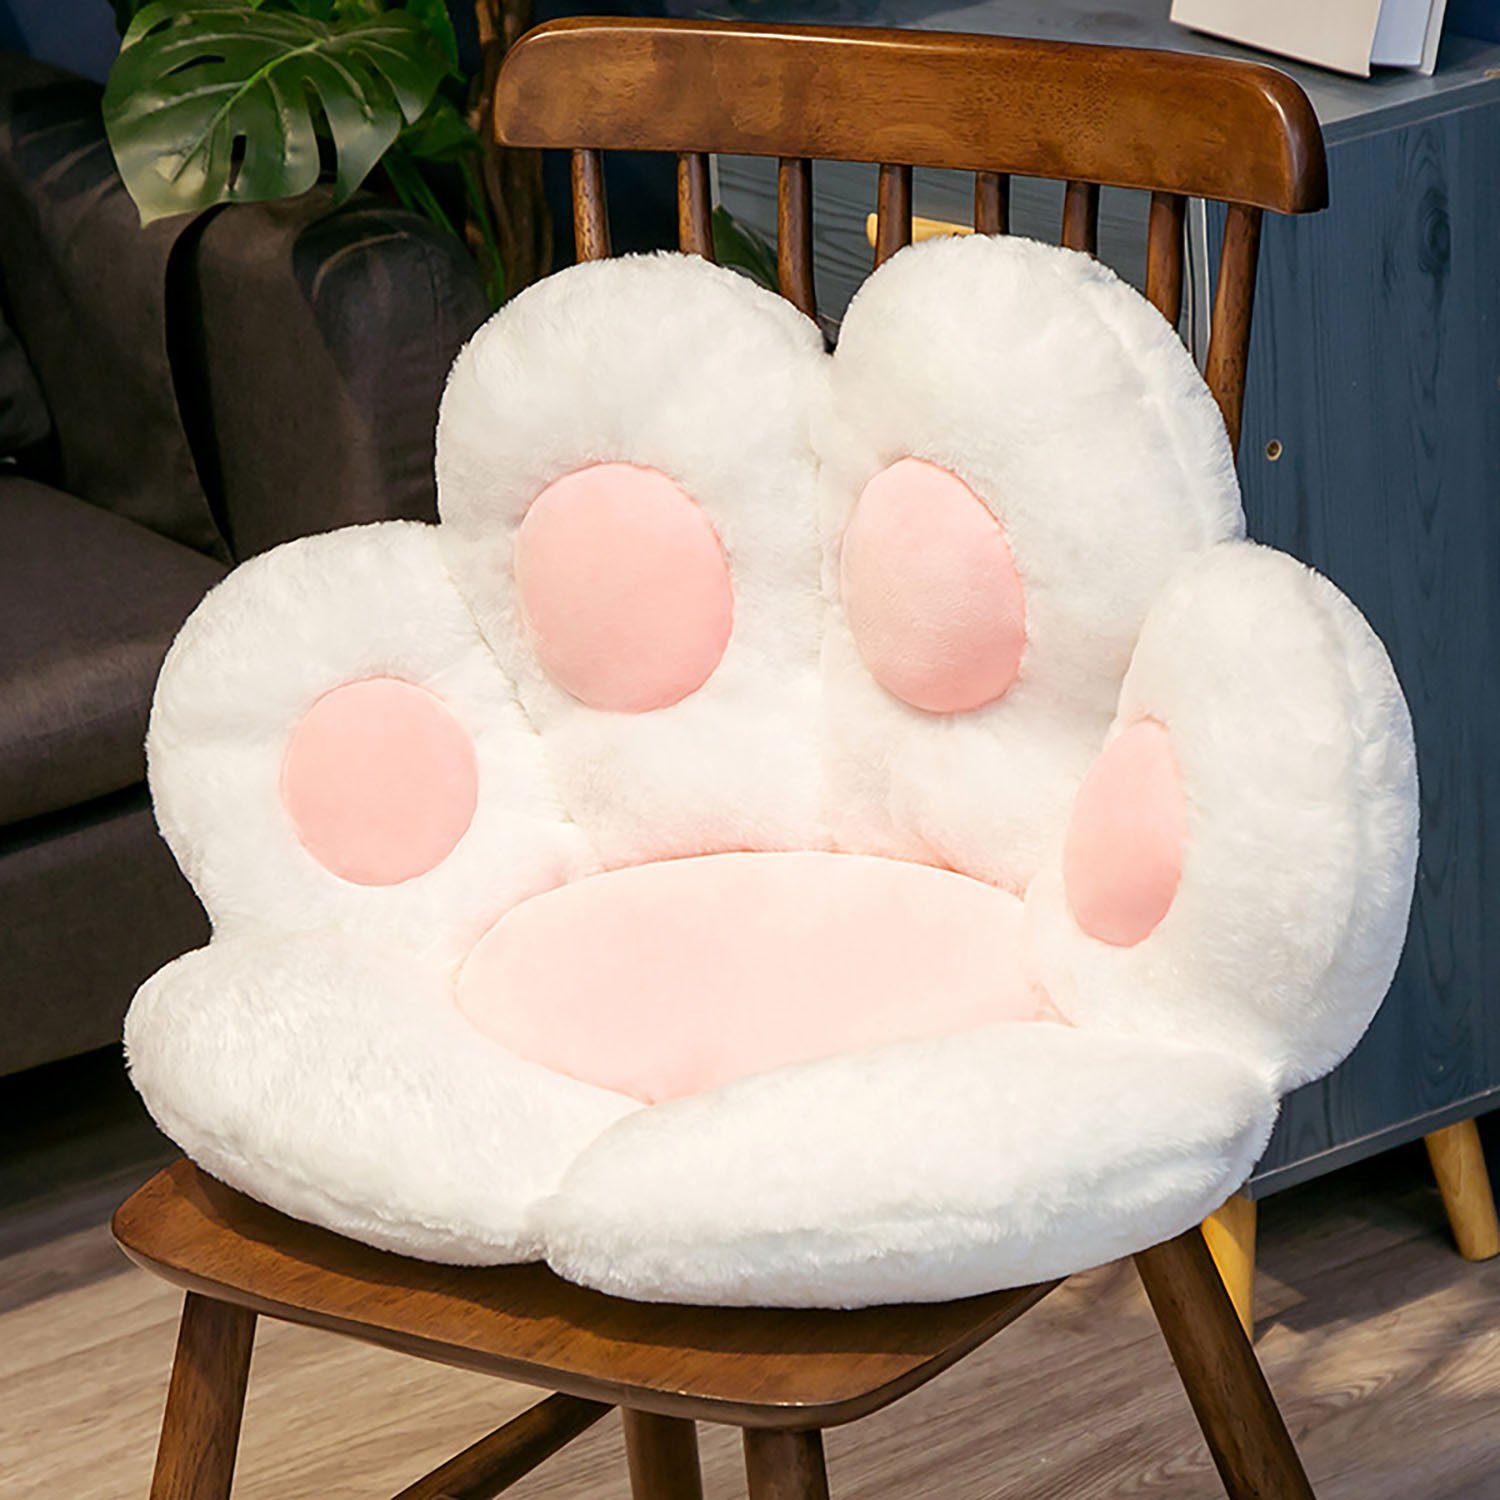 yozhiqu Sitzkissen Lazy Susan Cat's Paw Shaped Sitzkissen Kissen - Komfort Sitzkissen, Einteiliges Design, modisch und praktisch, bringt Wärme in Ihr Zuhause